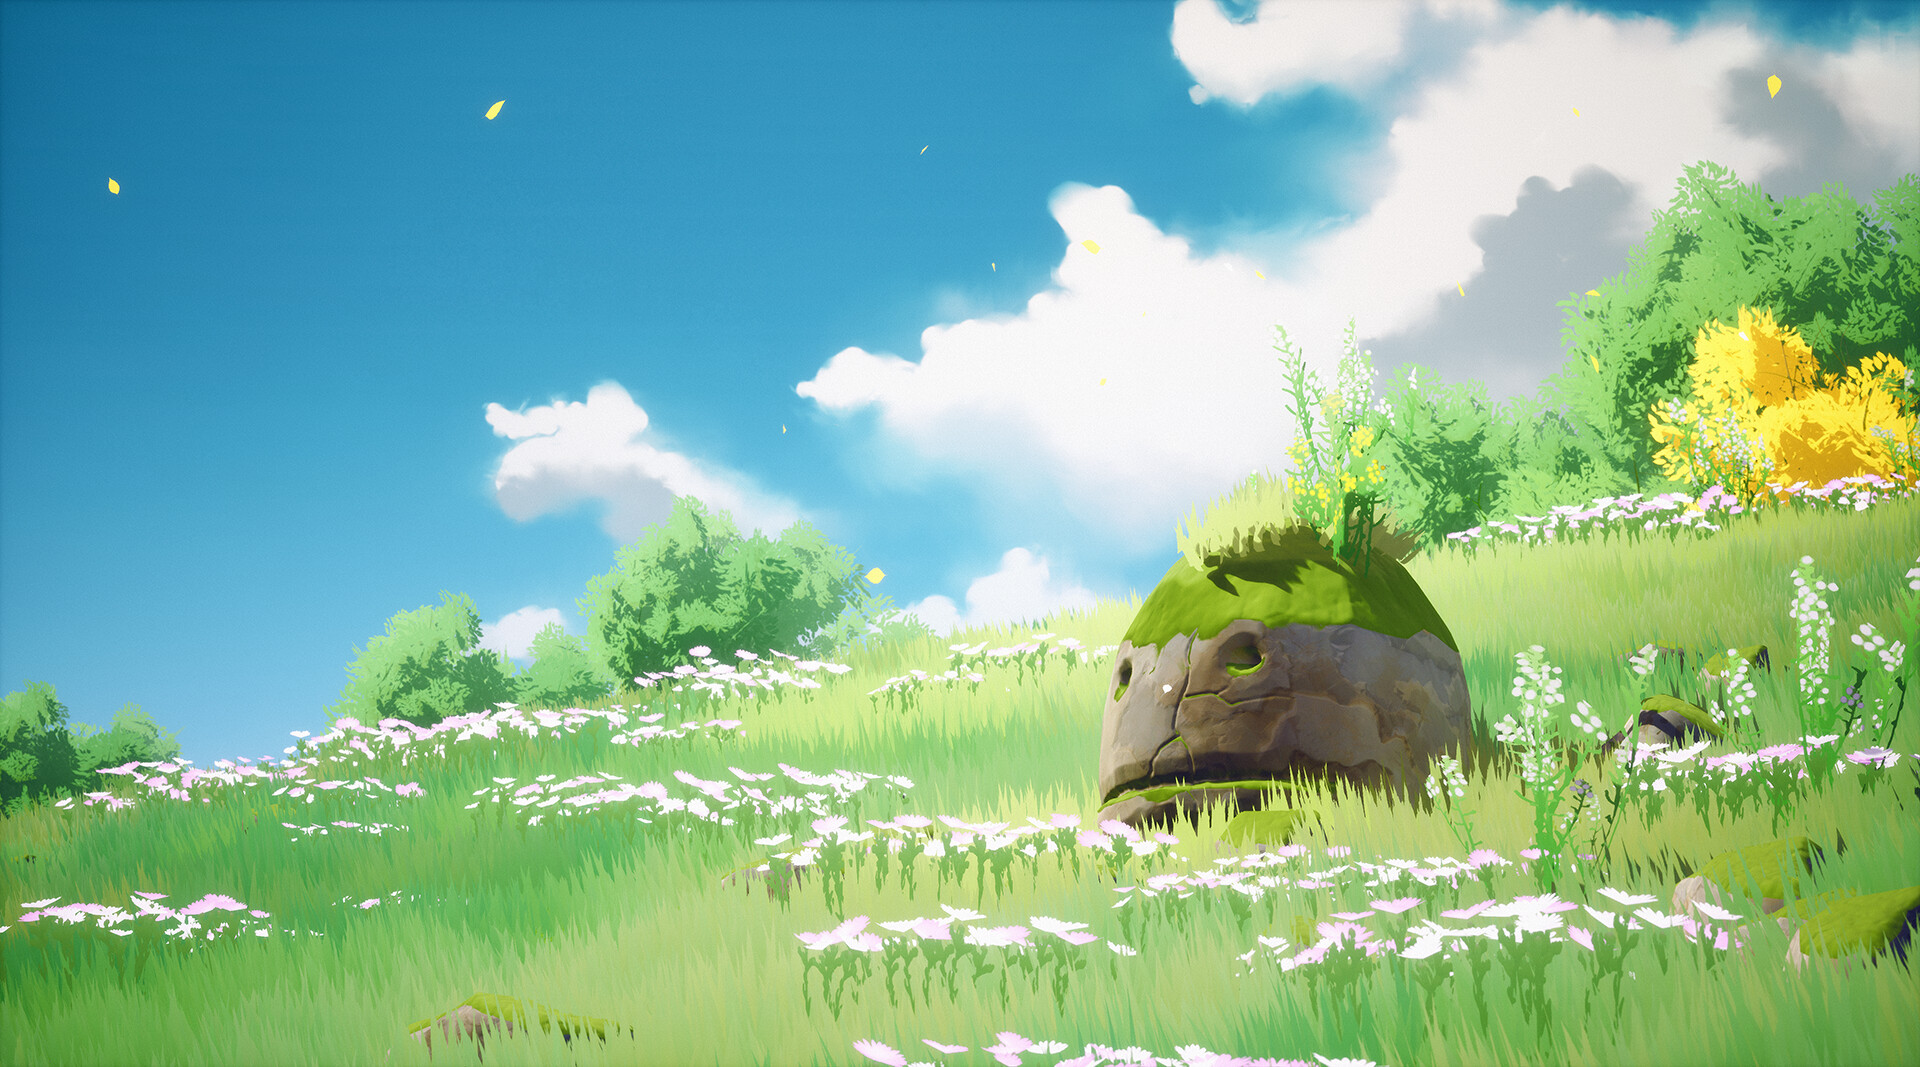 Zelda breath of the wild 2 Fan art - Finished Projects - Blender Artists  Community